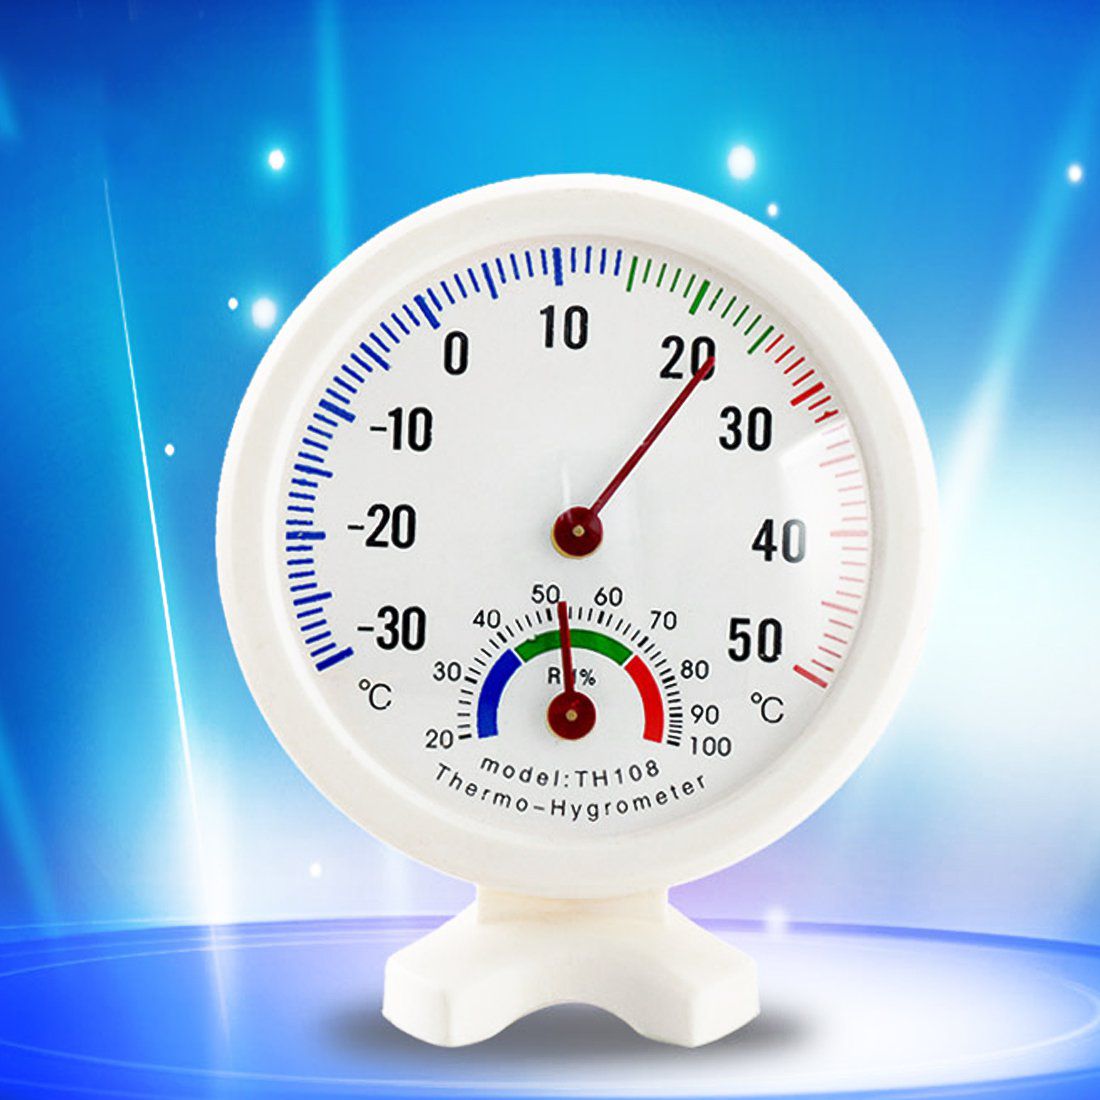 température et hygrométrie ( humidité) - Code OMC 027